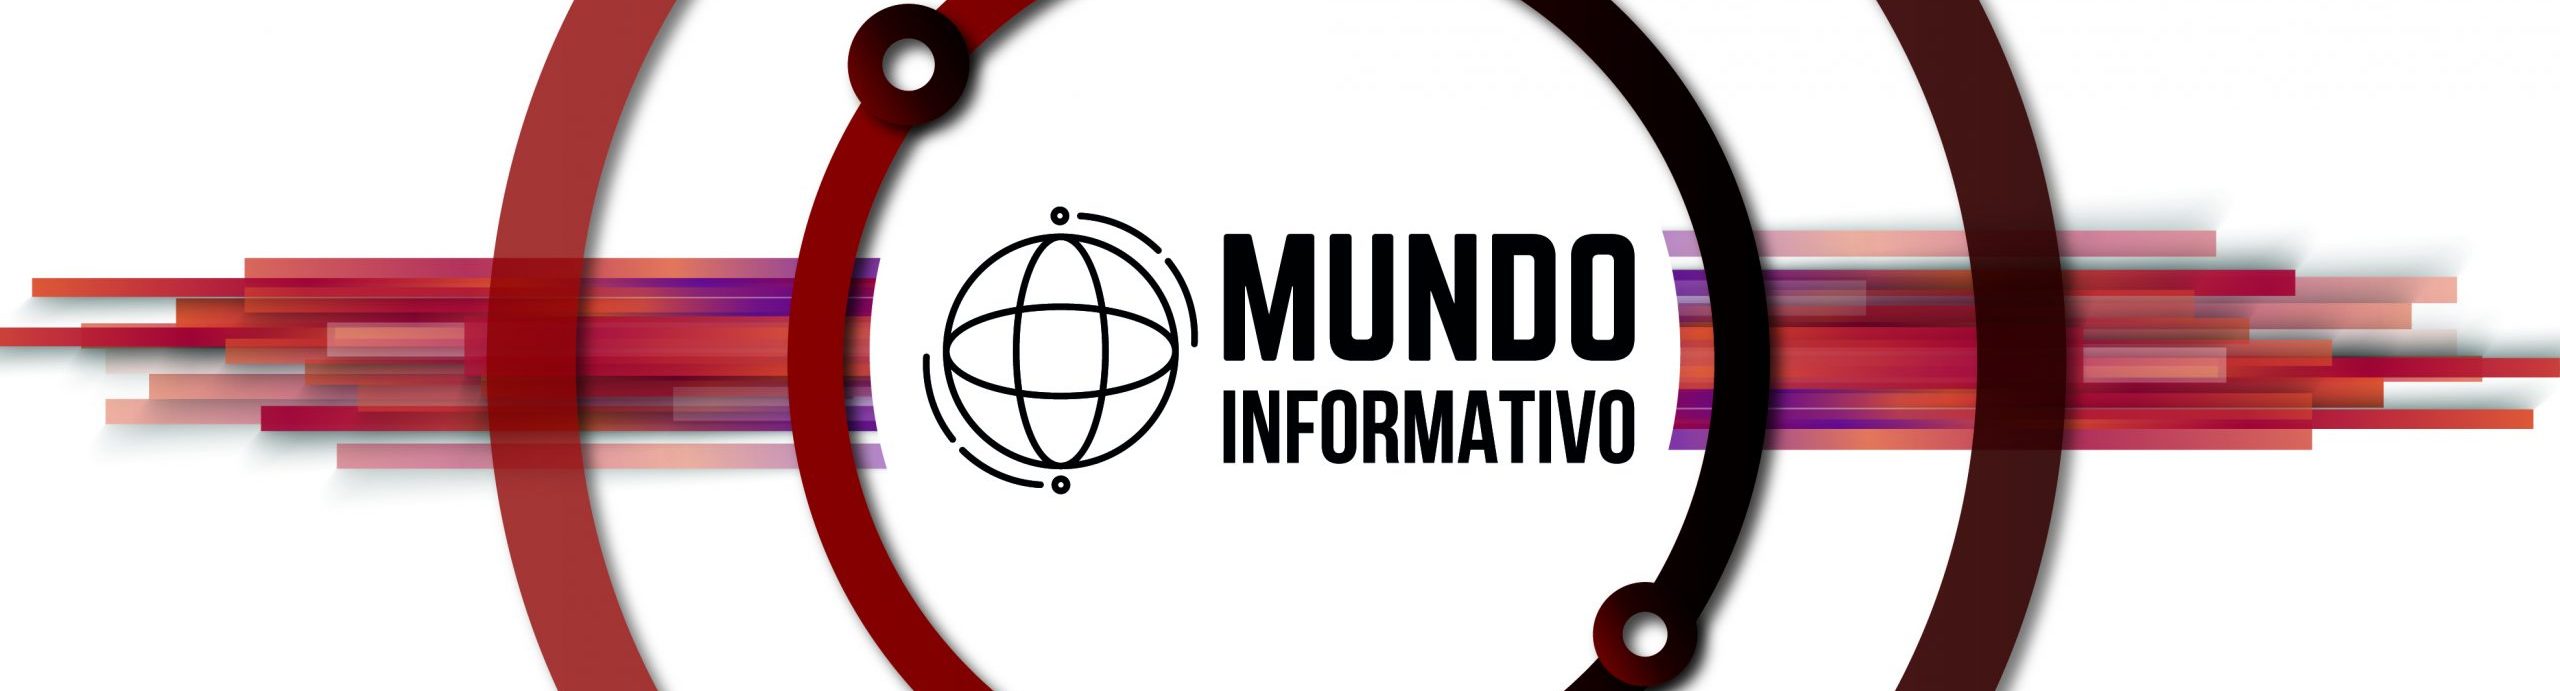 Mundo Informativo